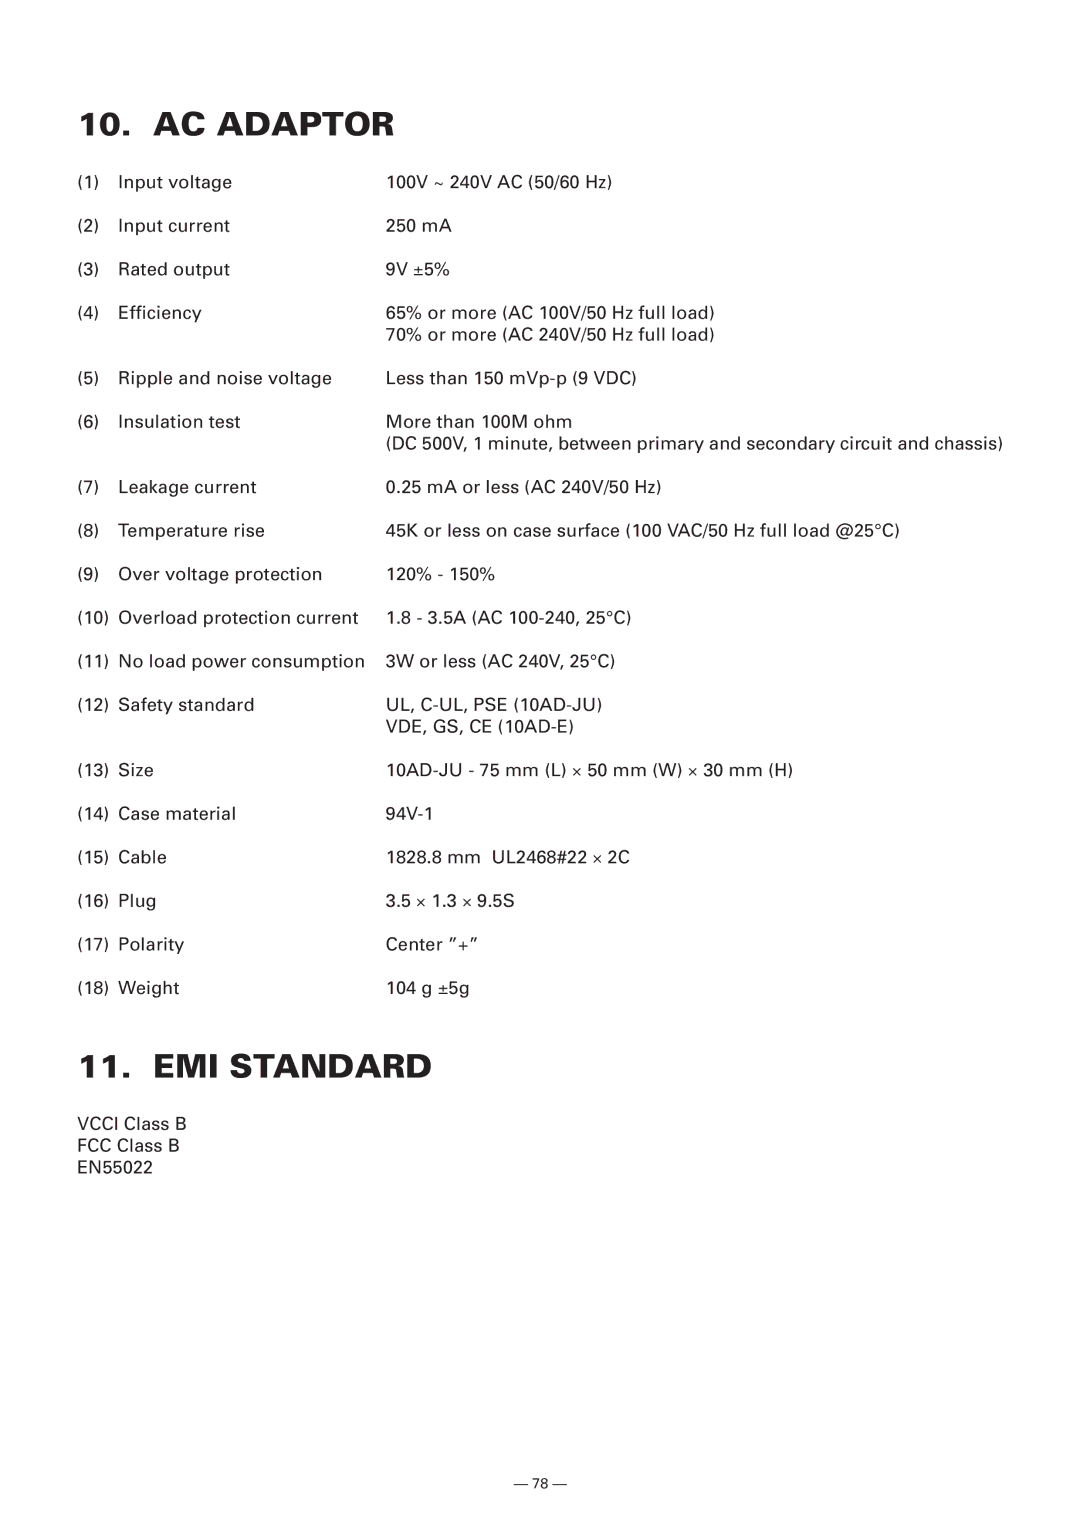 Citizen Systems Model CMP-10 manual AC Adaptor, EMI Standard, UL, C-UL, PSE 10AD-JU 